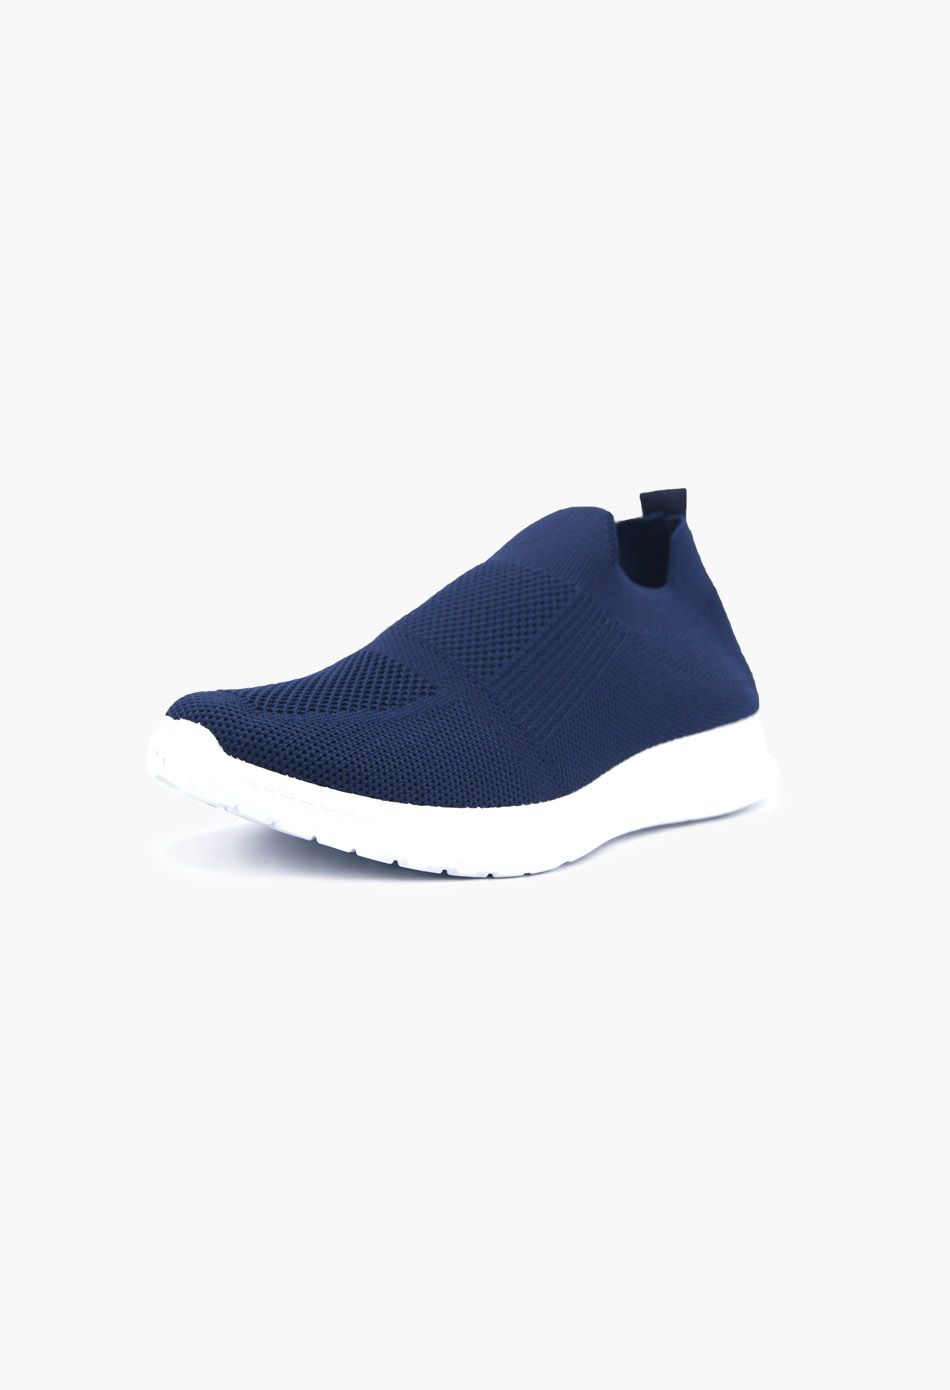 Ανδρικά Αθλητικά Παπούτσια για Τρέξιμο τύπου κάλτσα Μπλε / V20-blue ΑΘΛΗΤΙΚΑ & SNEAKERS joya.gr